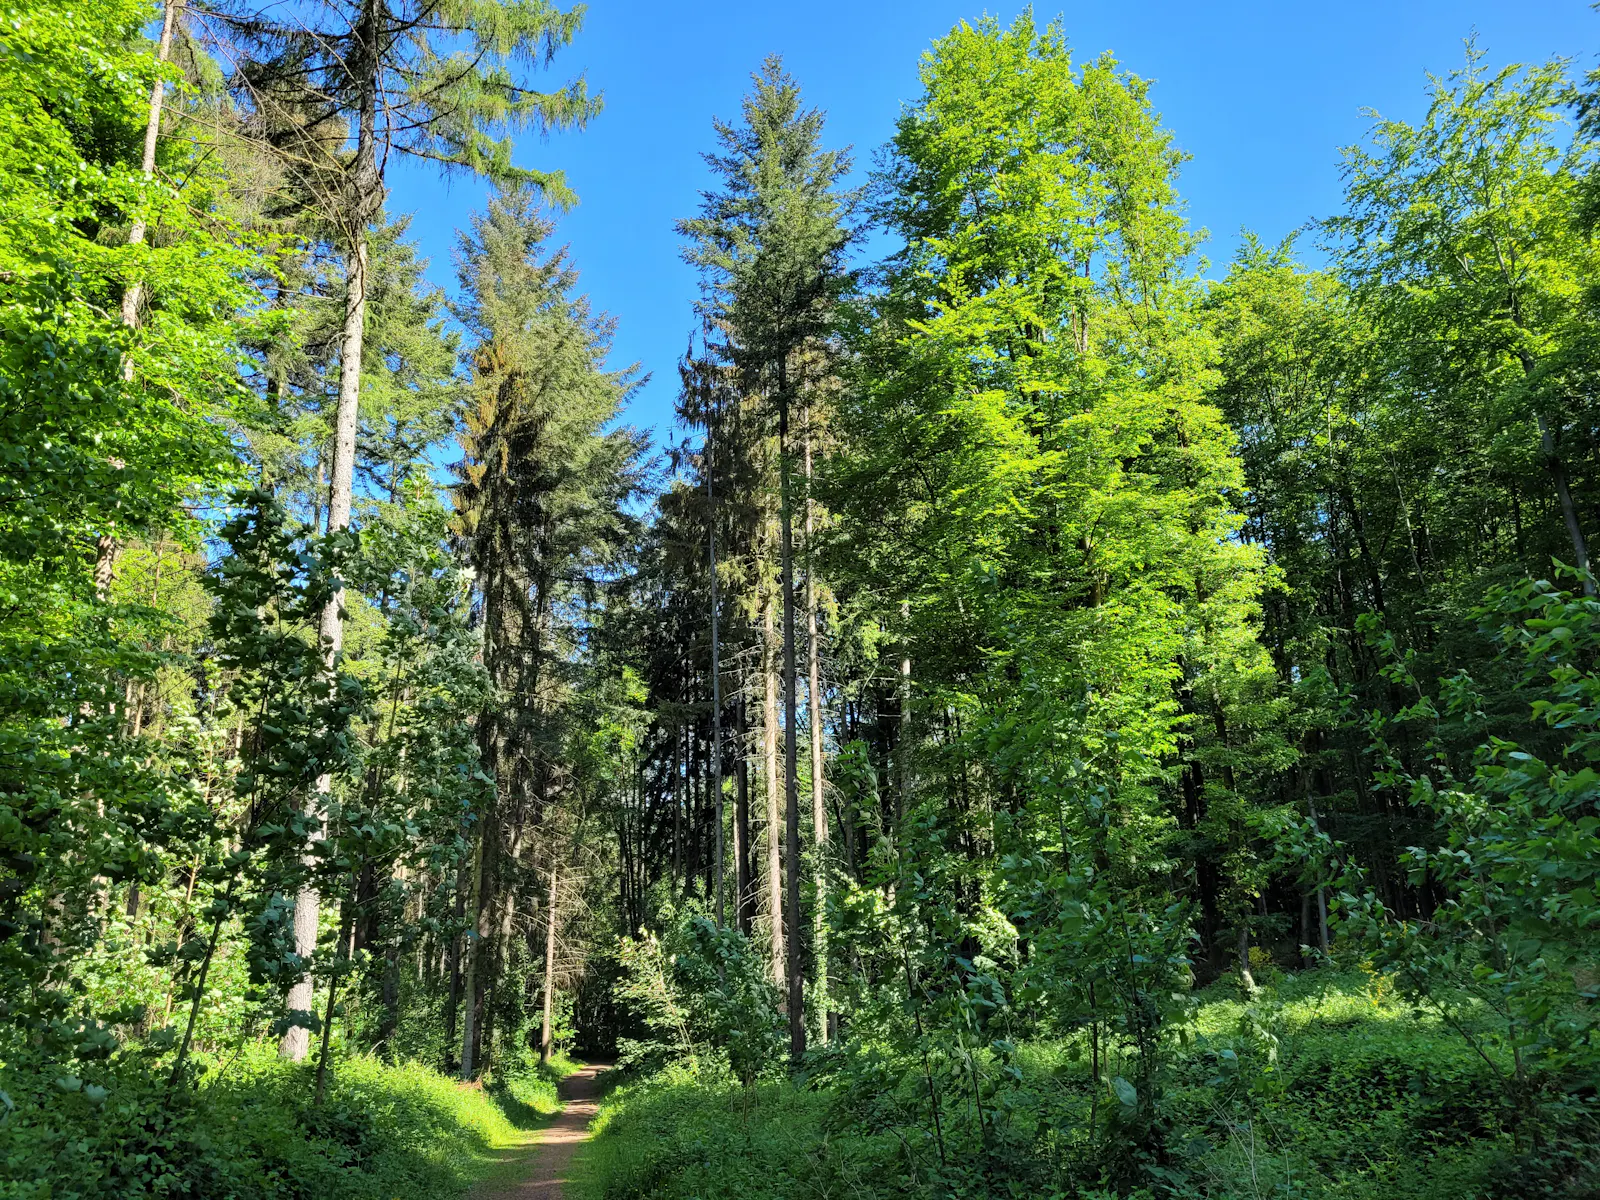 Wald mit hohen Nadel- und Laubbäumen, darüber blauer Himmel.